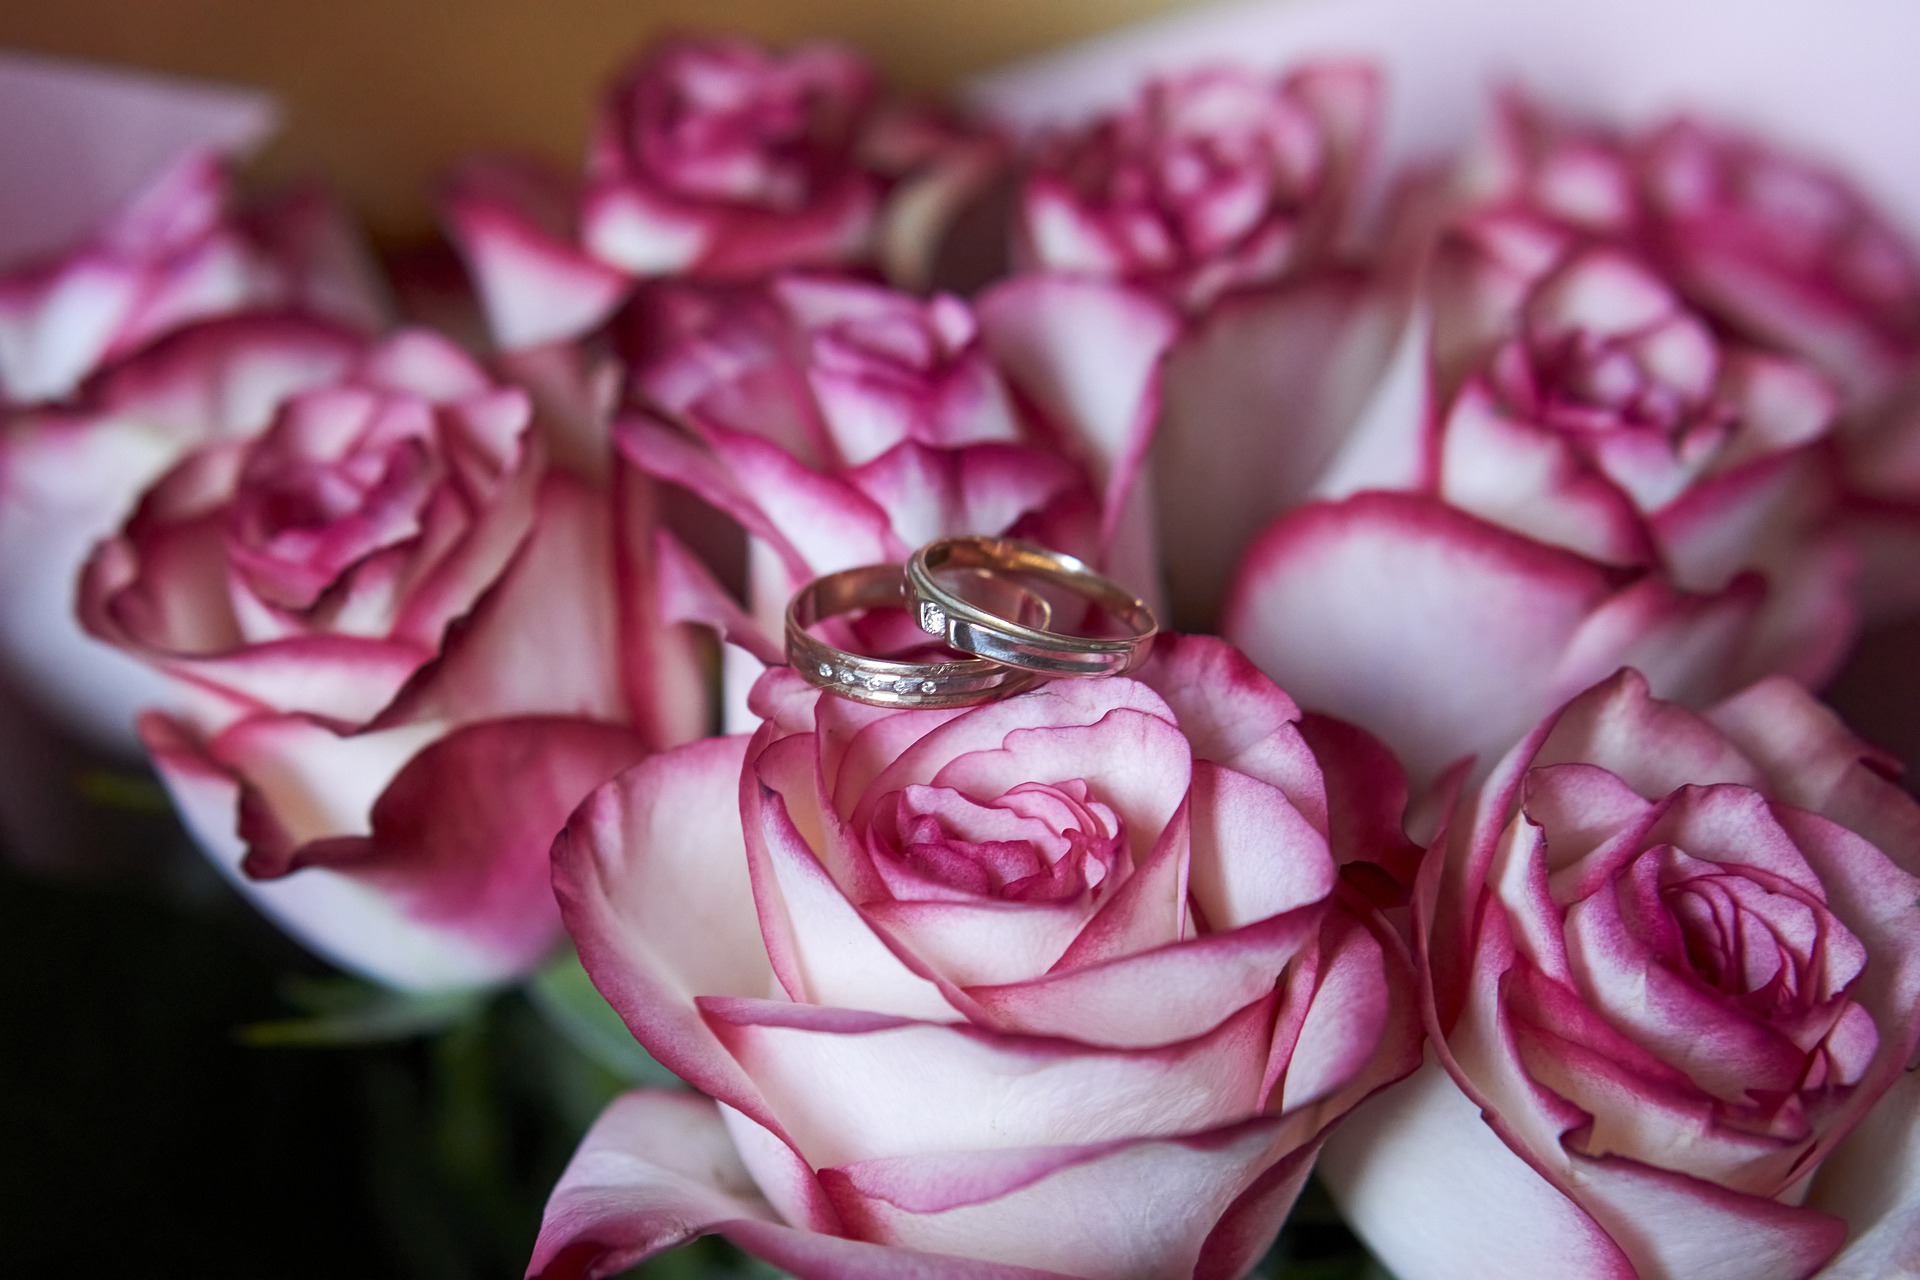 白玫瑰和粉红玫瑰花束